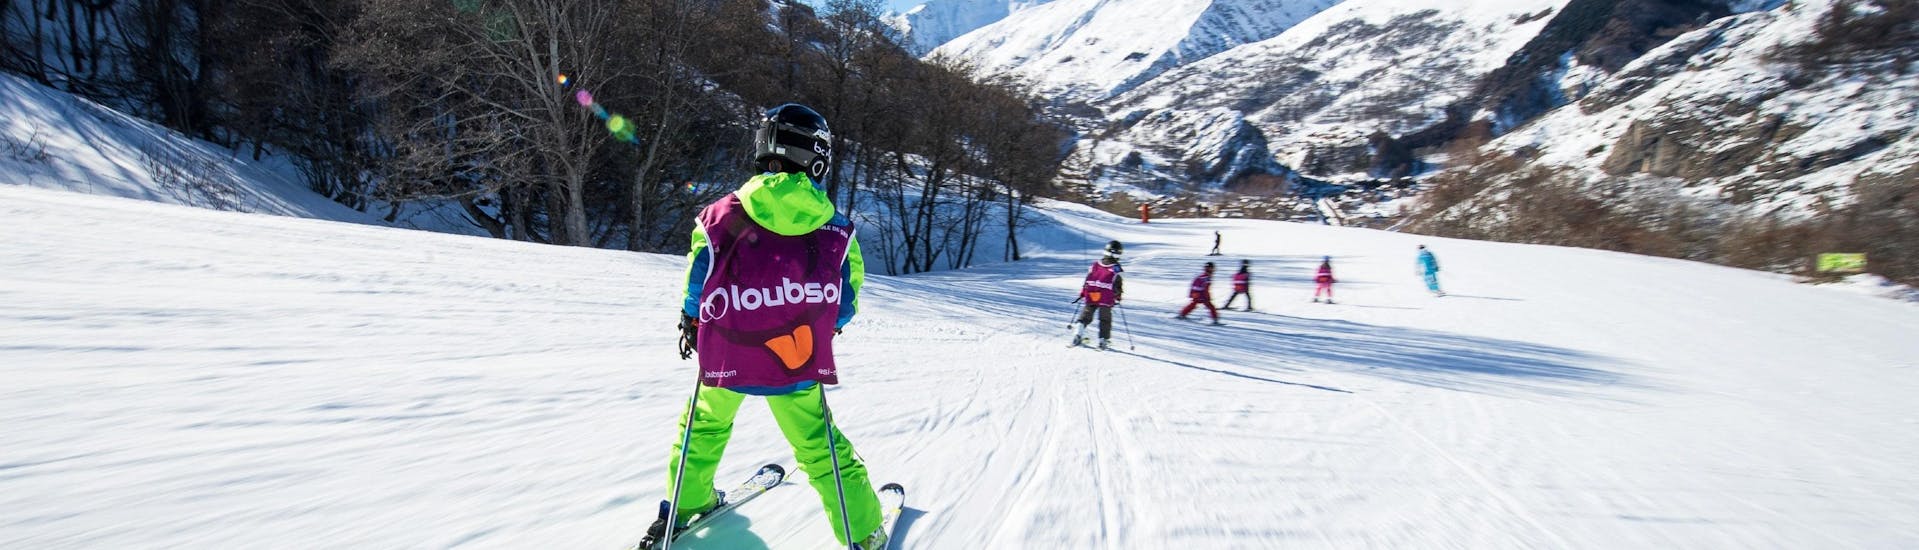 Clases de esquí para niños a partir de 5 años para principiantes.